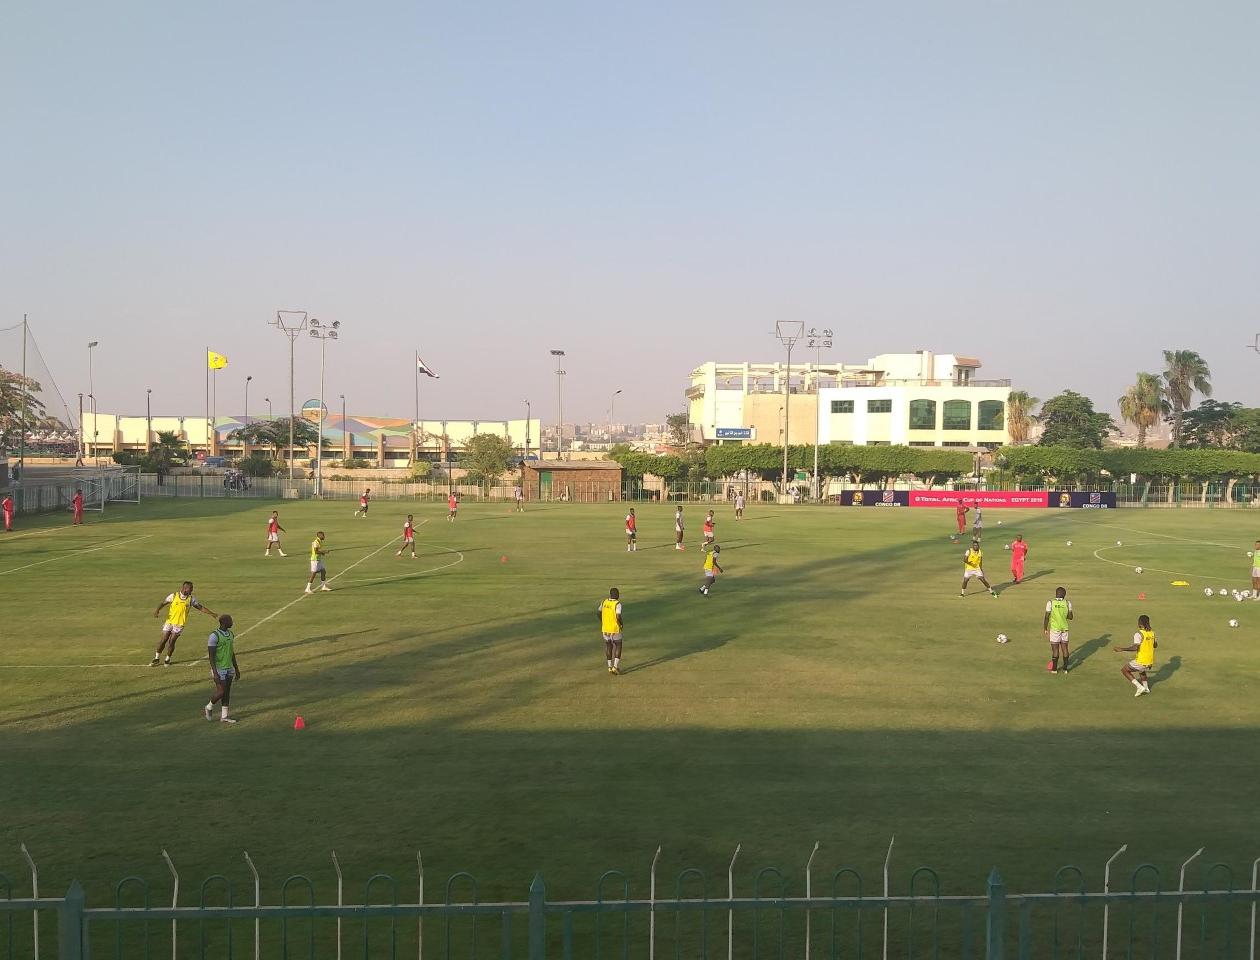 Les Léopards de la RDC s'entraînent sur le terrain d'Arab Contractors au Caire lors de la CAN 2019